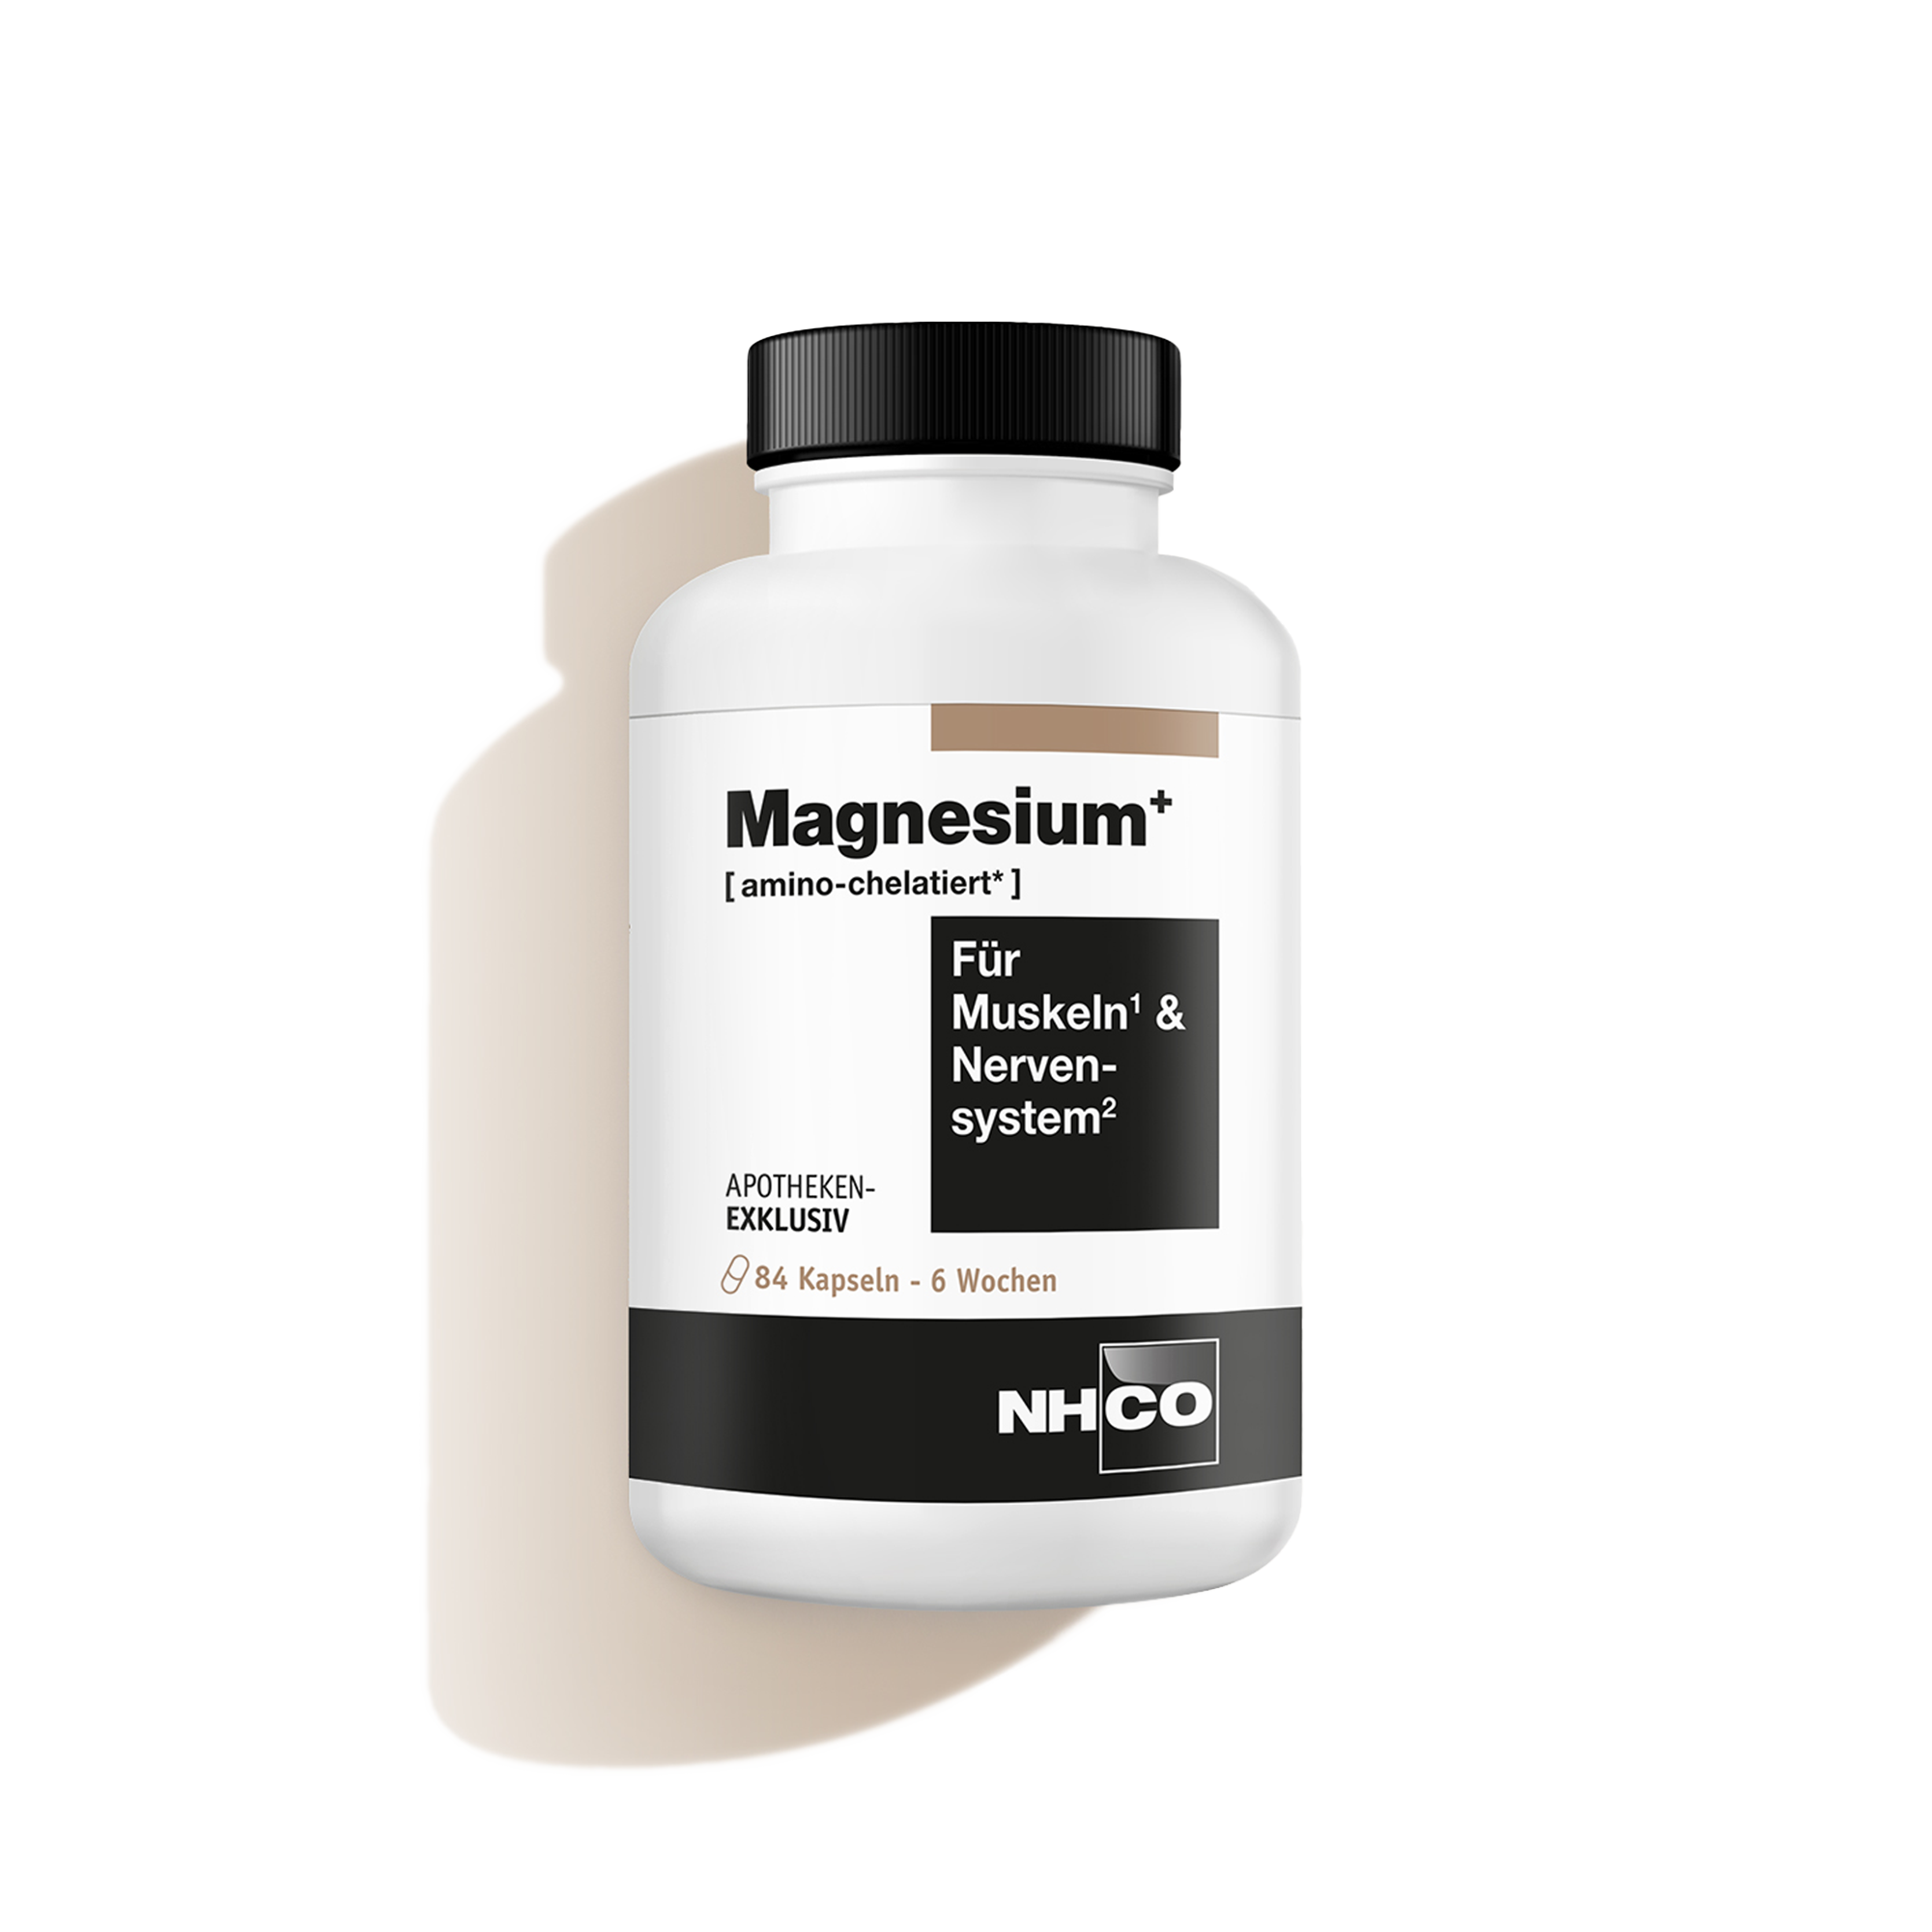 Magnesiumpräparat von NHCO Nutrition mit AminoScience® Komplex für Muskeln und Nervensystem.